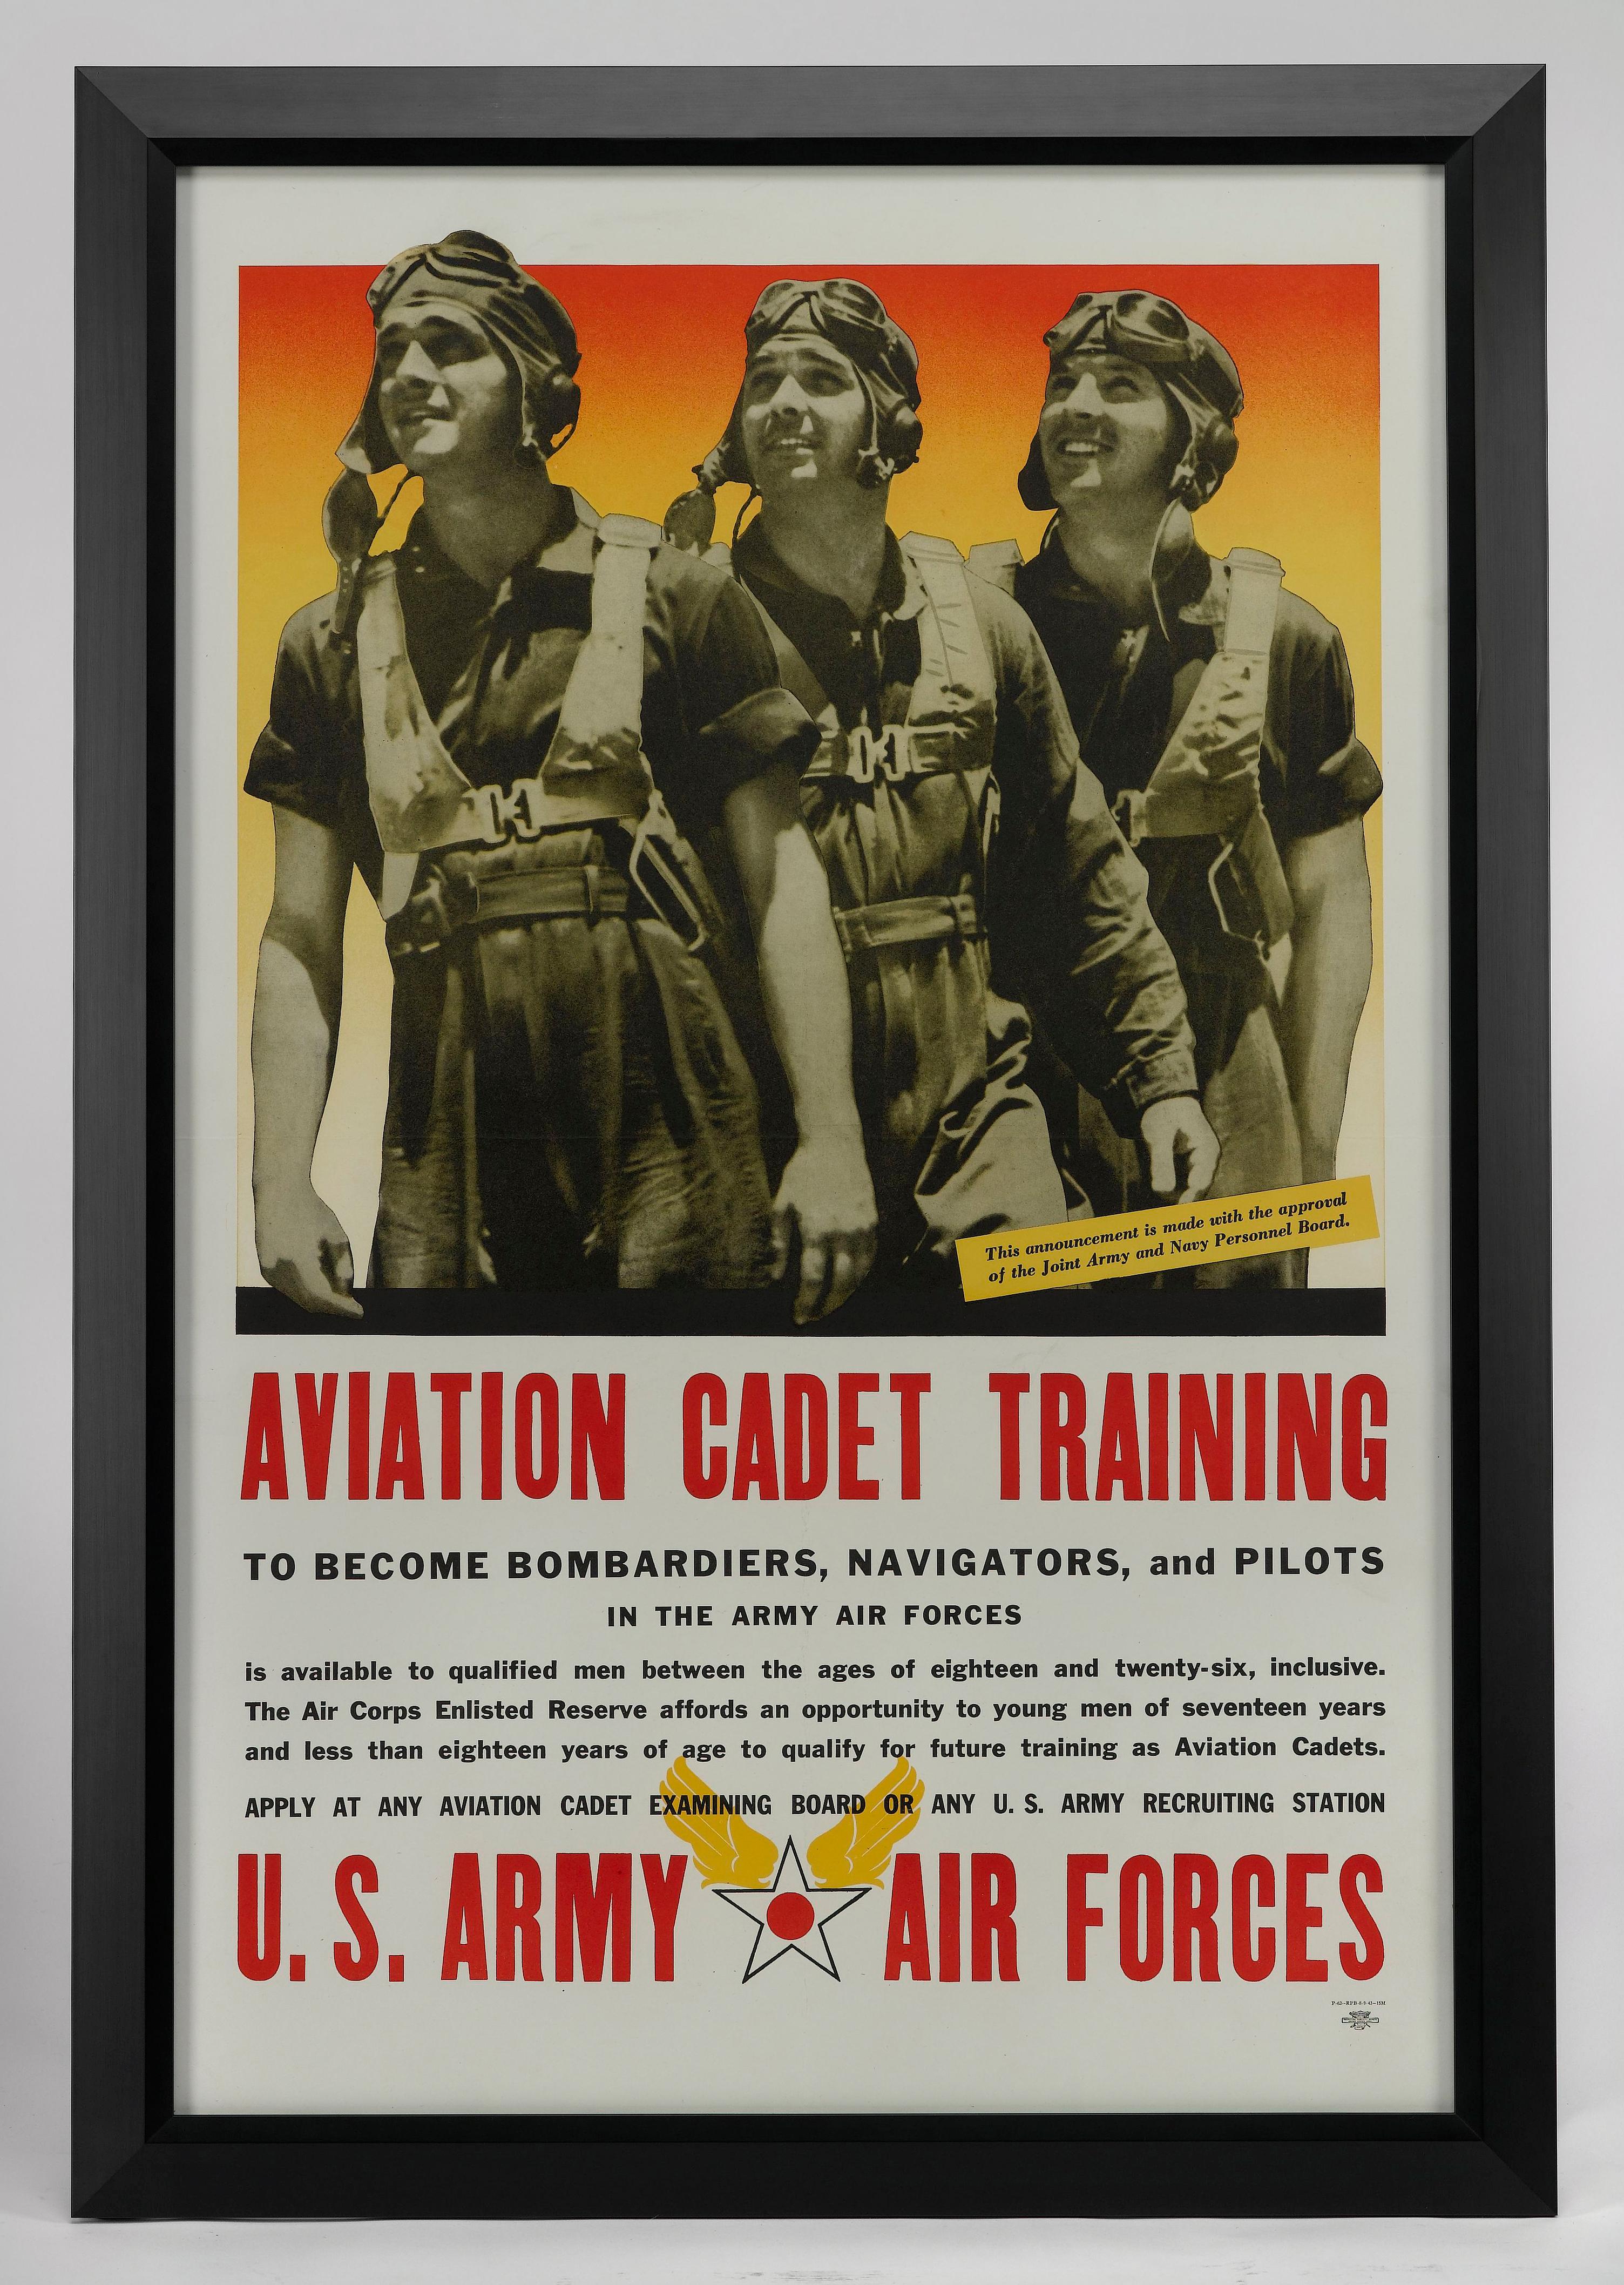 Voici une affiche de recrutement de l'armée de l'air américaine datant de la Seconde Guerre mondiale. L'affiche a été publiée en août 1943 par le Bureau de publicité pour le recrutement. L'affiche représente trois jeunes hommes en combinaison de